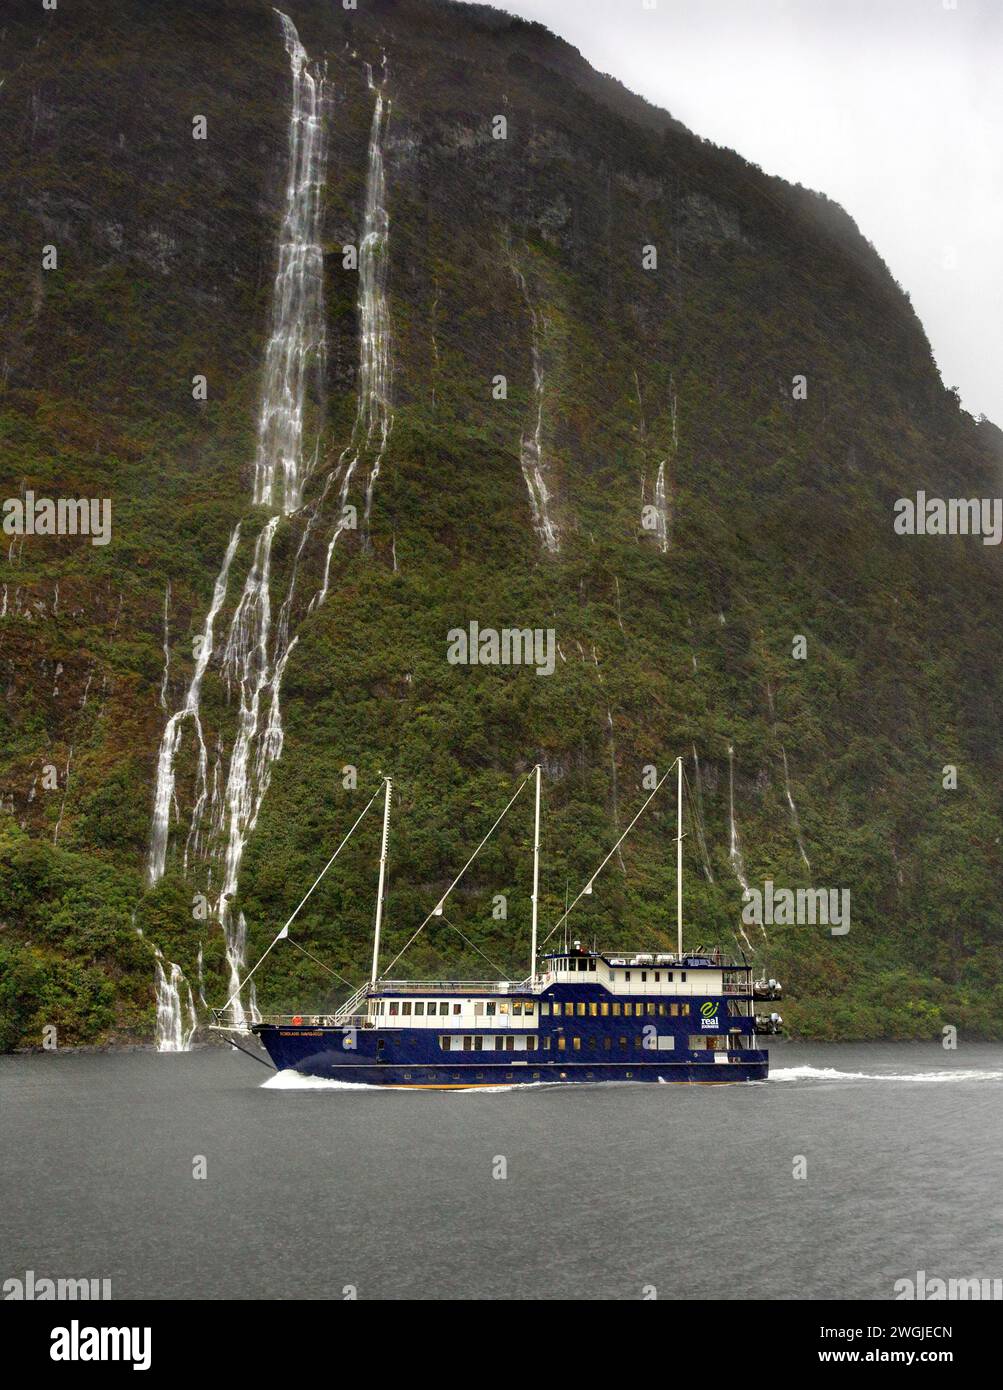 Le cascate e la nave da crociera Fiordland Navigator si aprono in una giornata di pioggia a Doubtful Sound / Patea, Fiordland /te Rua-o-te-Moko, nuova Zelanda / AOT Foto Stock